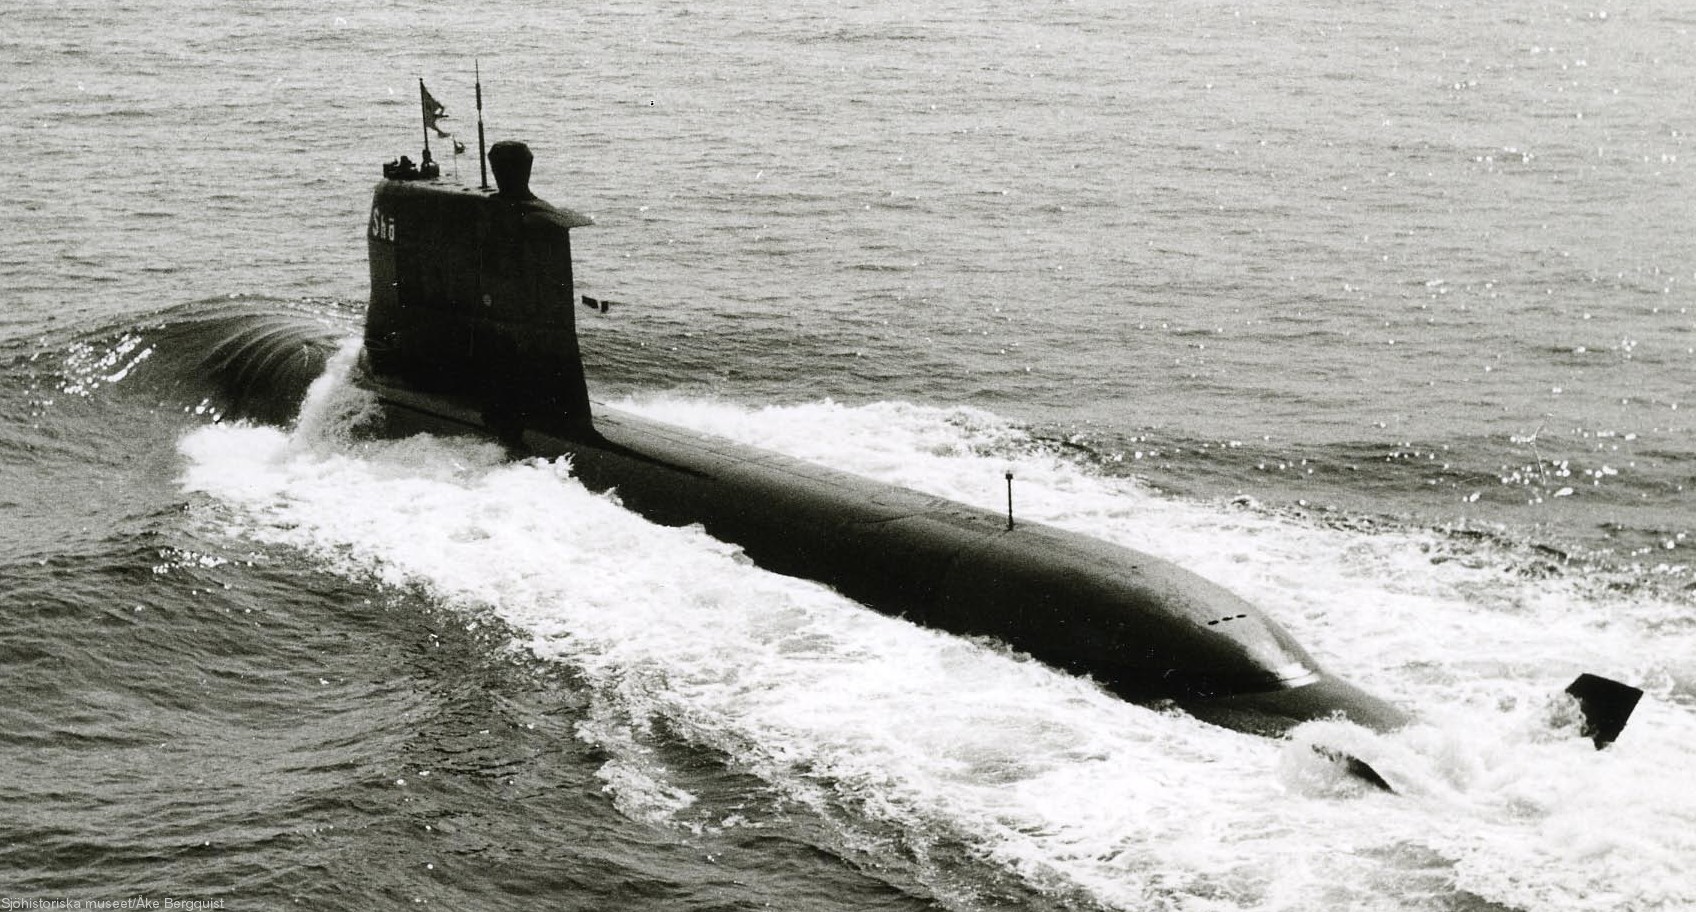 hswms hms sjöhästen shä sjöormen a11 class submarine ssk swedish navy svenska marinen försvarsmakten 07